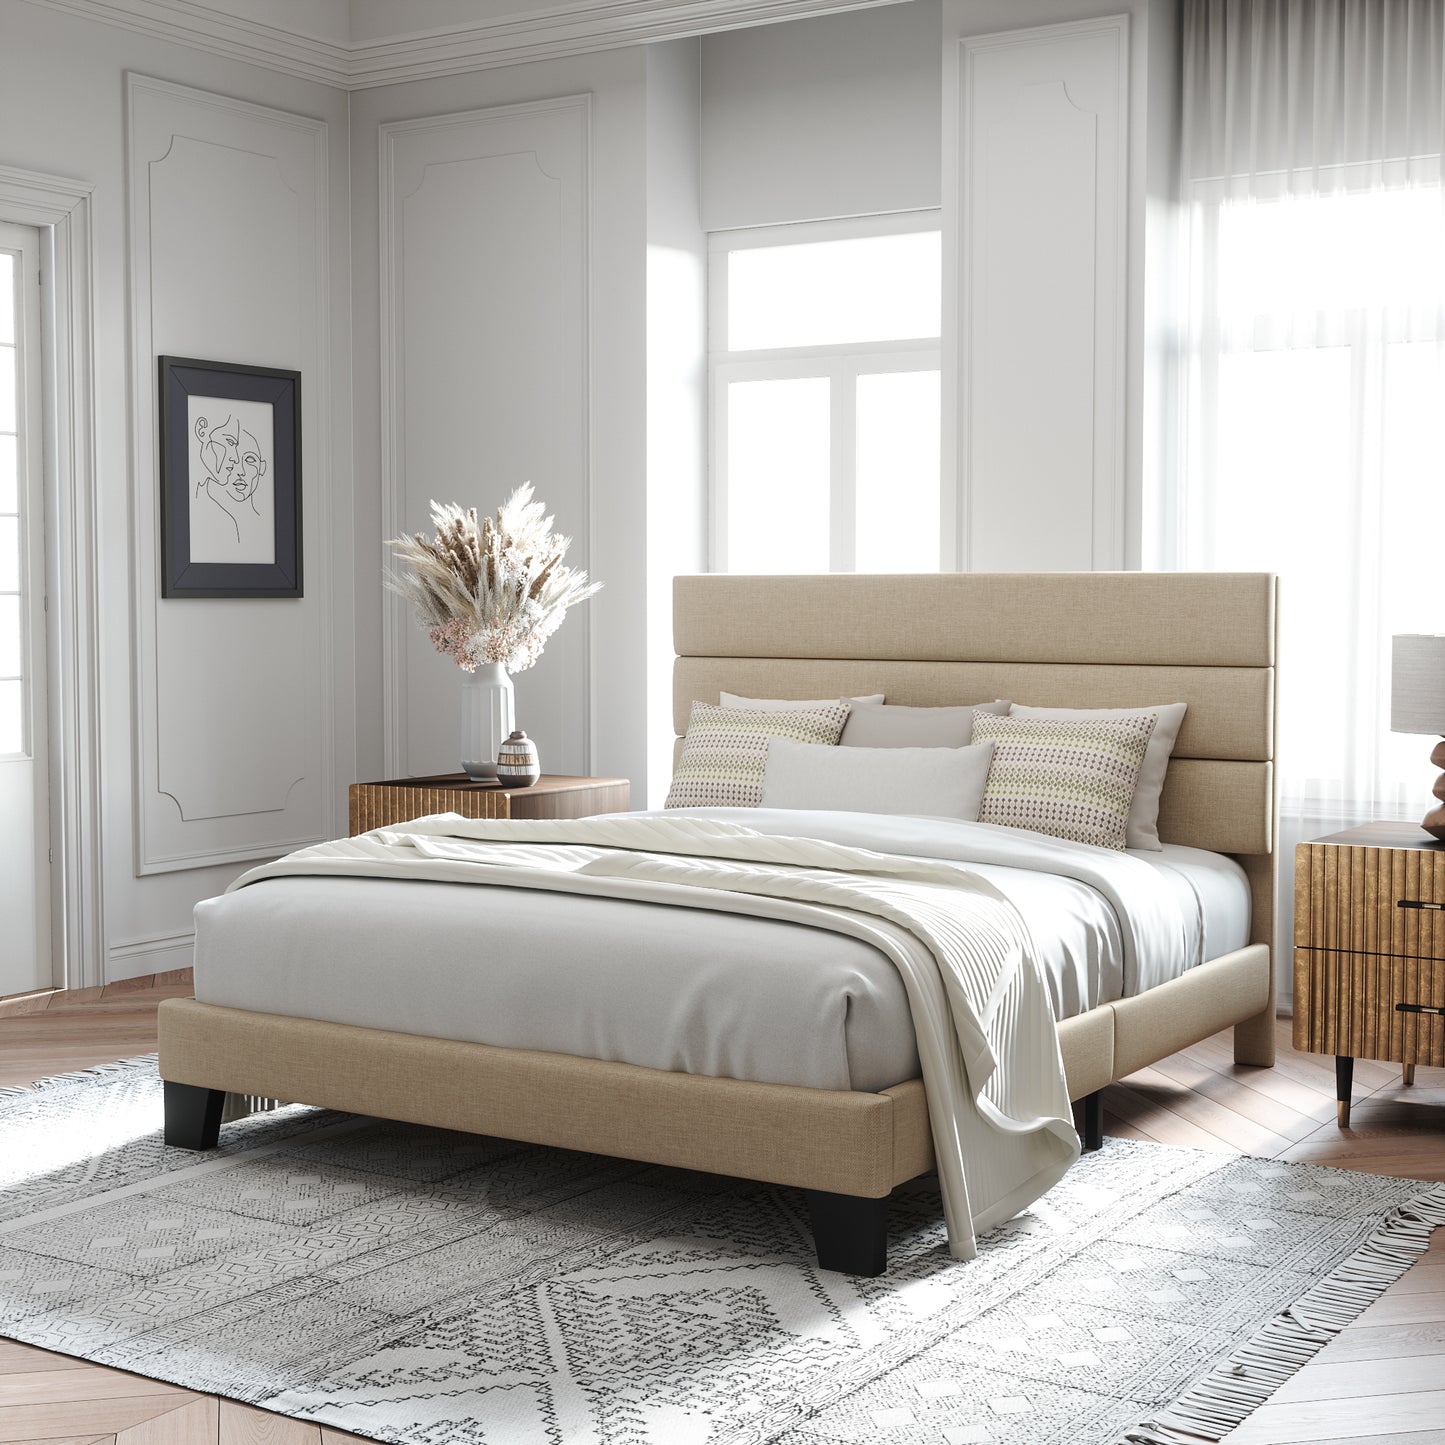 Allewie Full Size Platform Bed Frame with Velvet Upholstered Headboard and Wooden Slats Support, Black